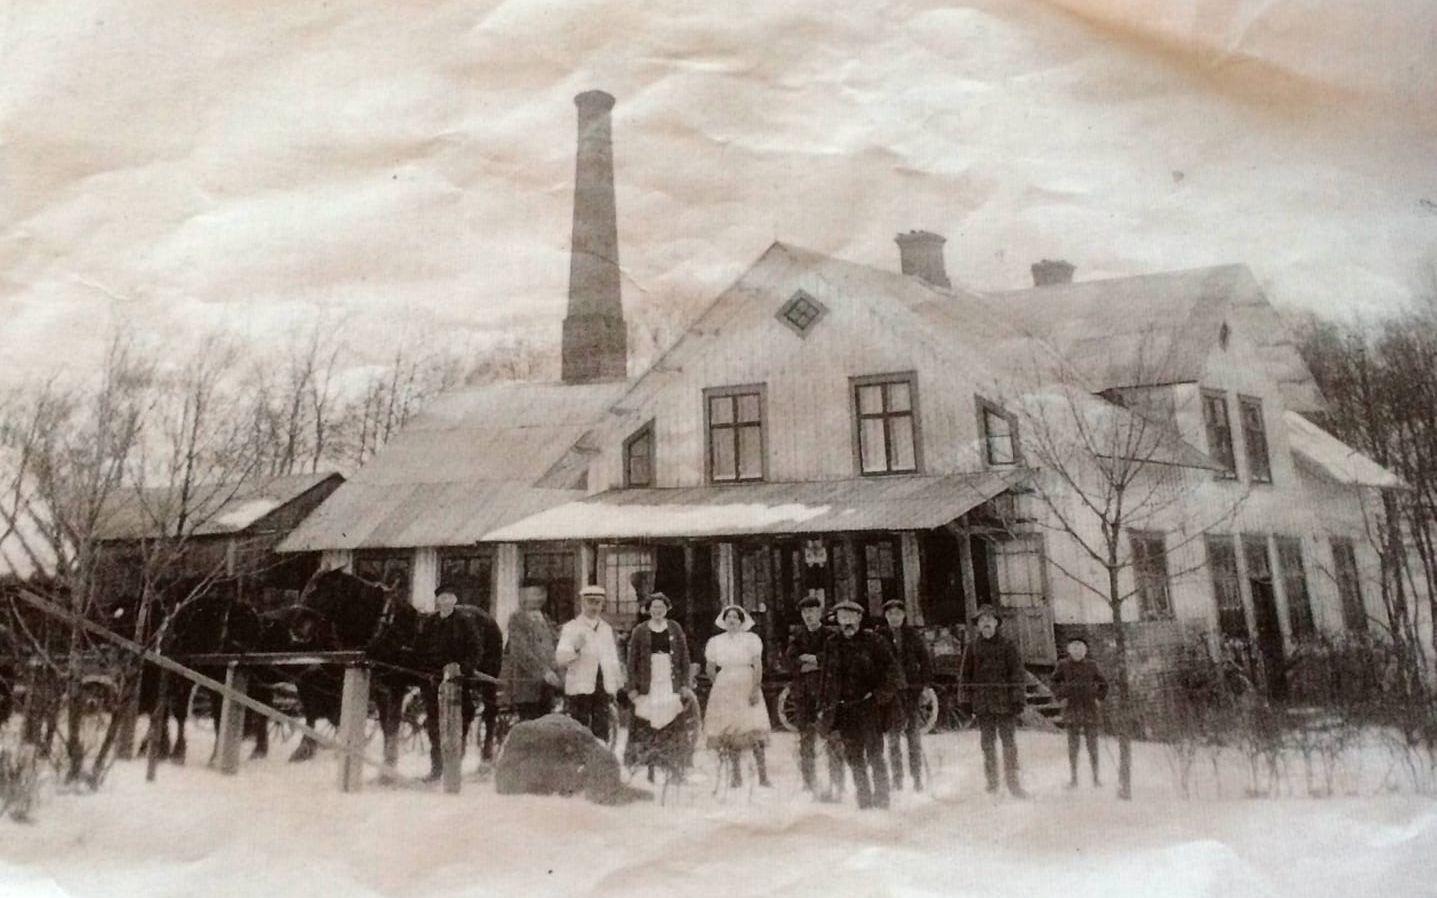 1915. En vintrig bild från Lerdala med mejeripersonalen och vad som troligen är en mjölkskjuts.